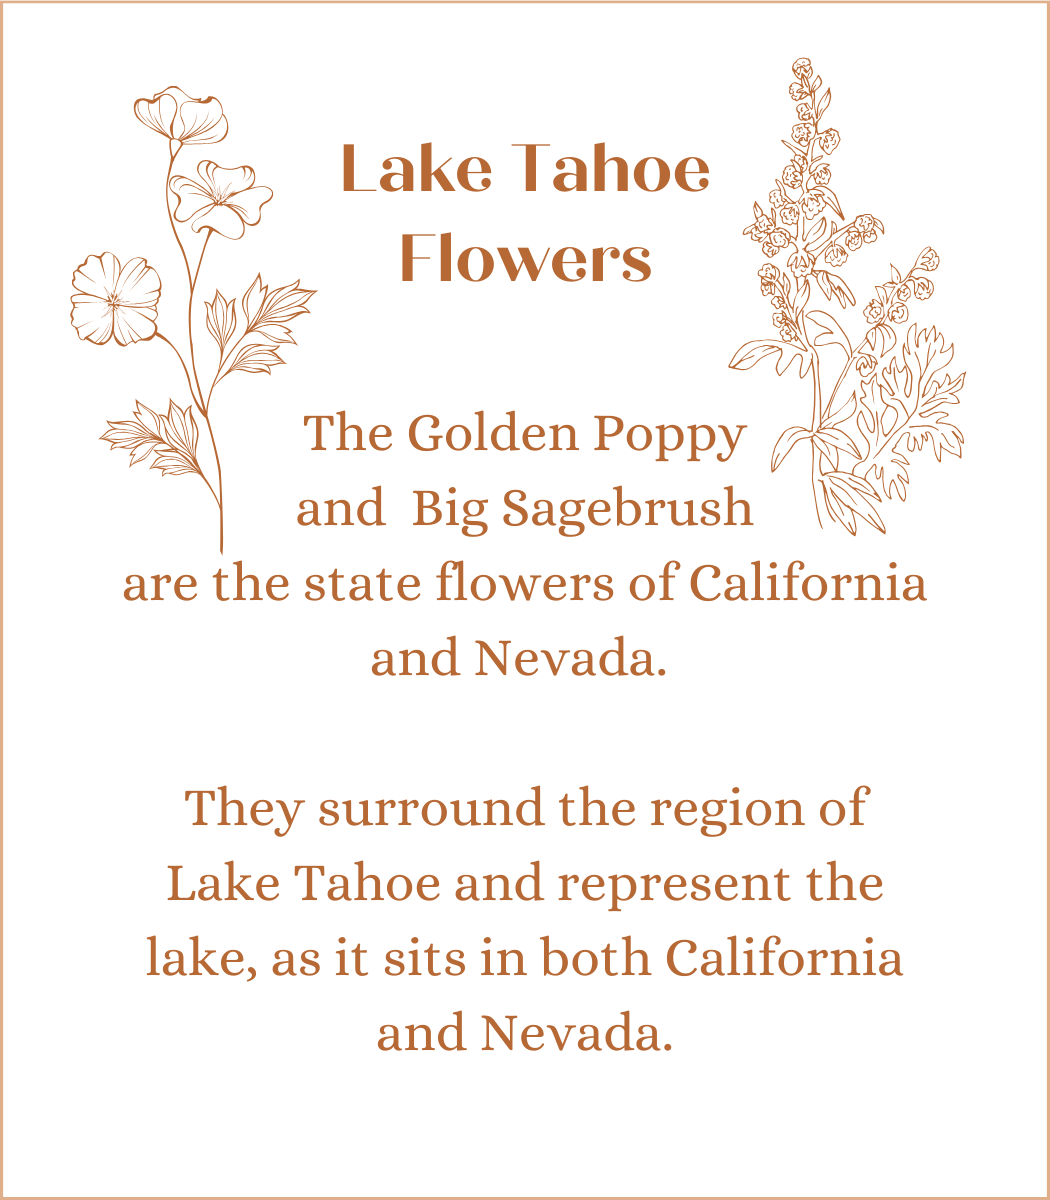 Lake Tahoe Flowers in Luna